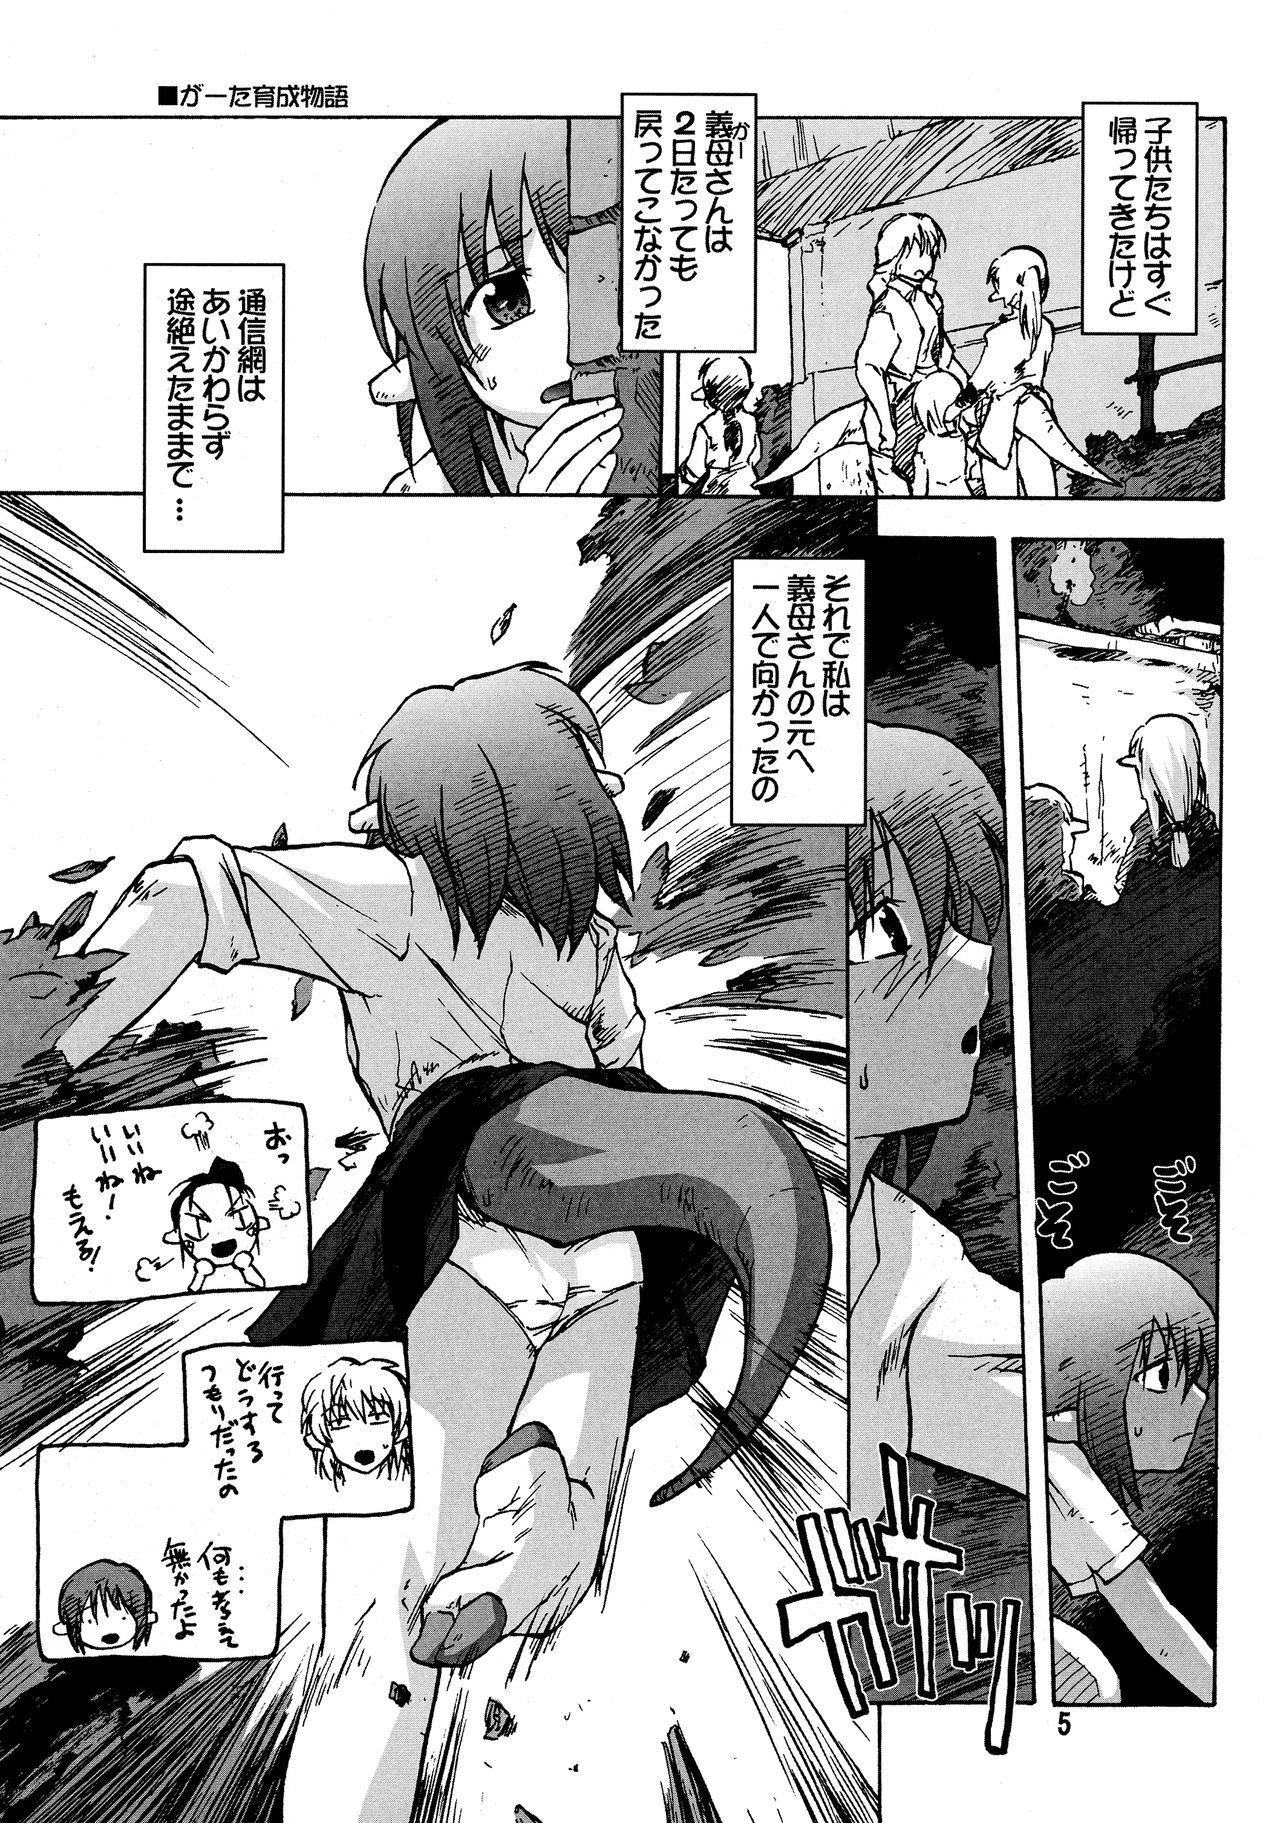 Free Blow Job Porn Manga Mintochikuwa vol. 3 Culona - Page 5